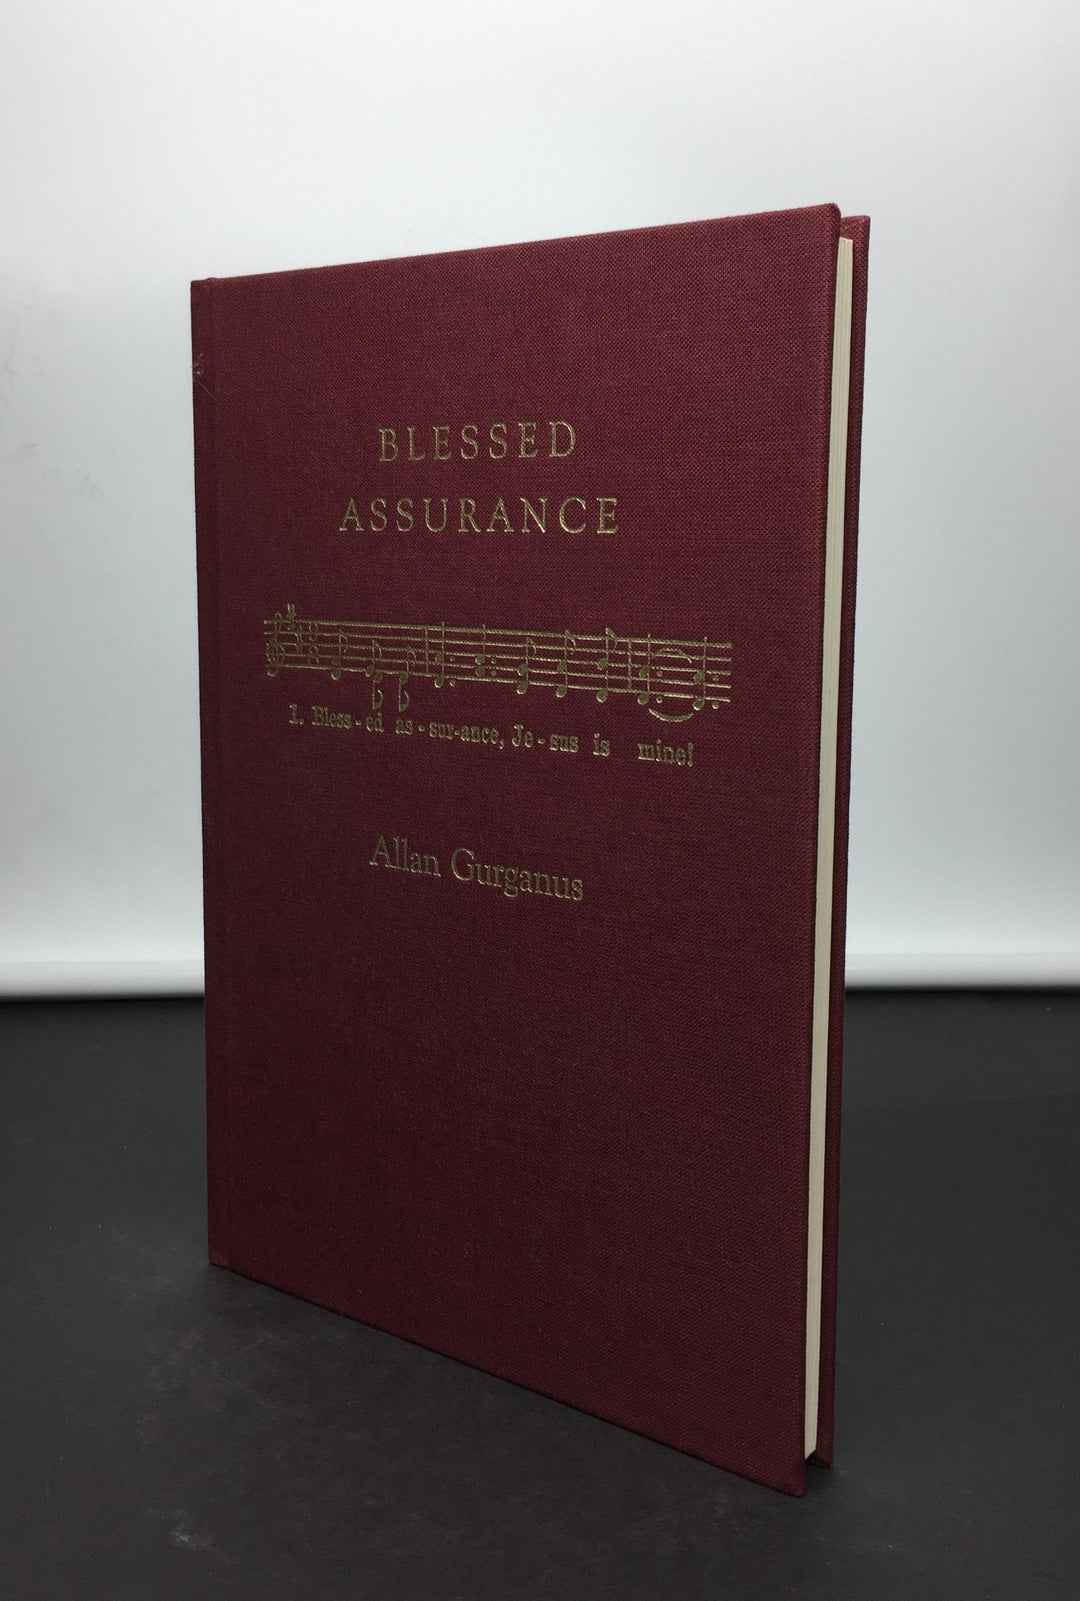 Gurganus, Allan - Blessed Assurance - SIGNED | back cover